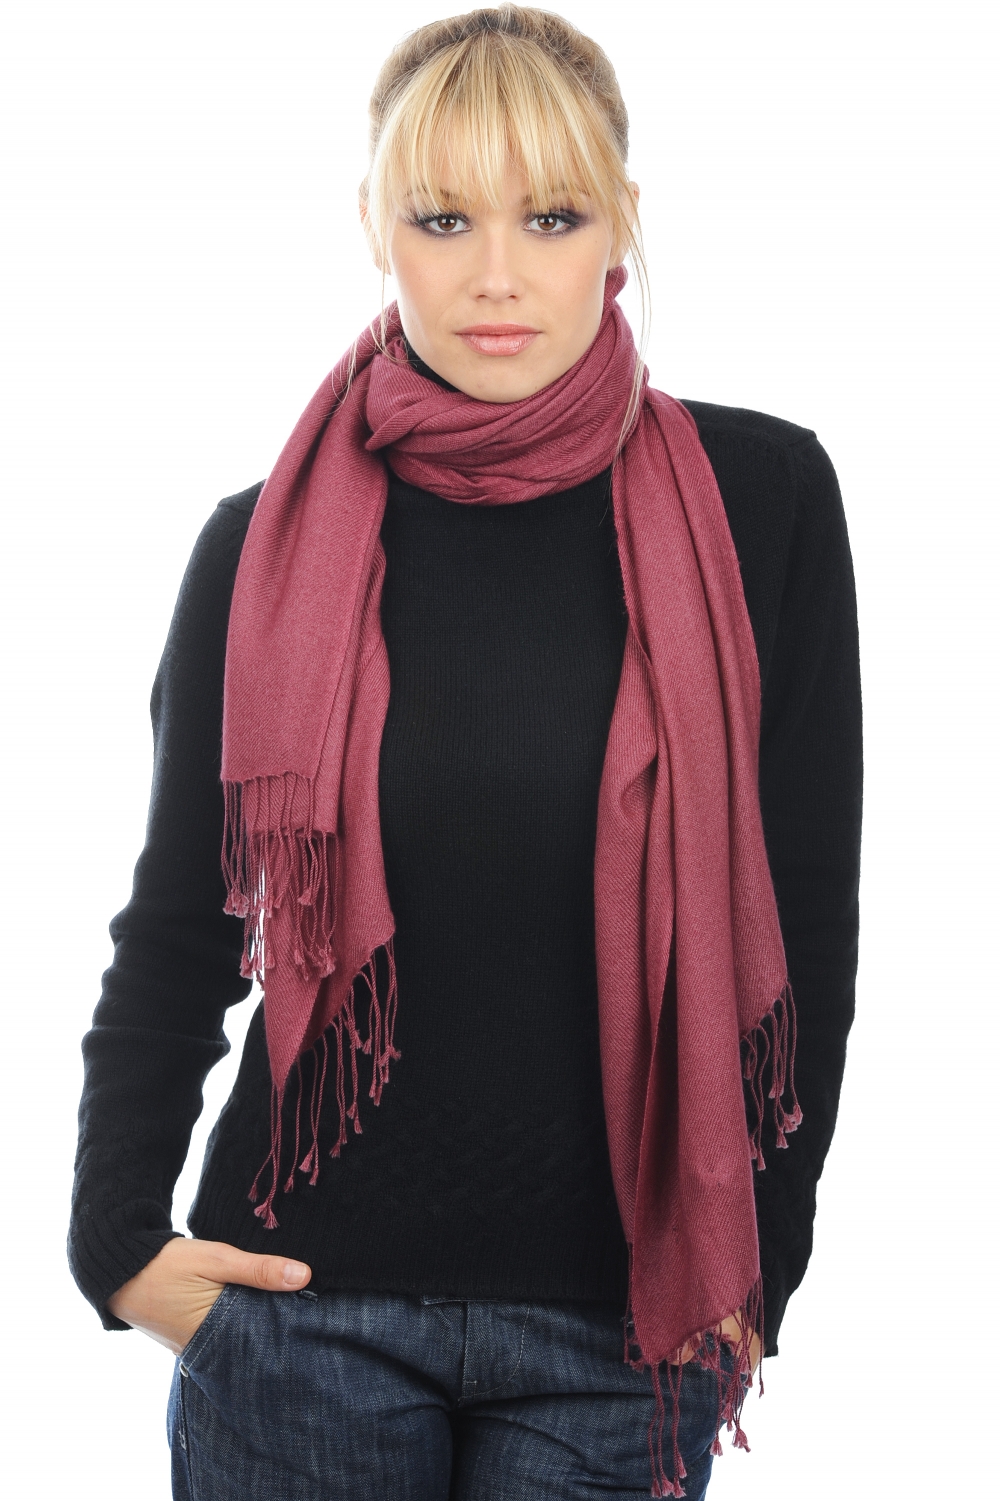 Cashmere accessories shawls diamant rose wine 204 cm x 92 cm